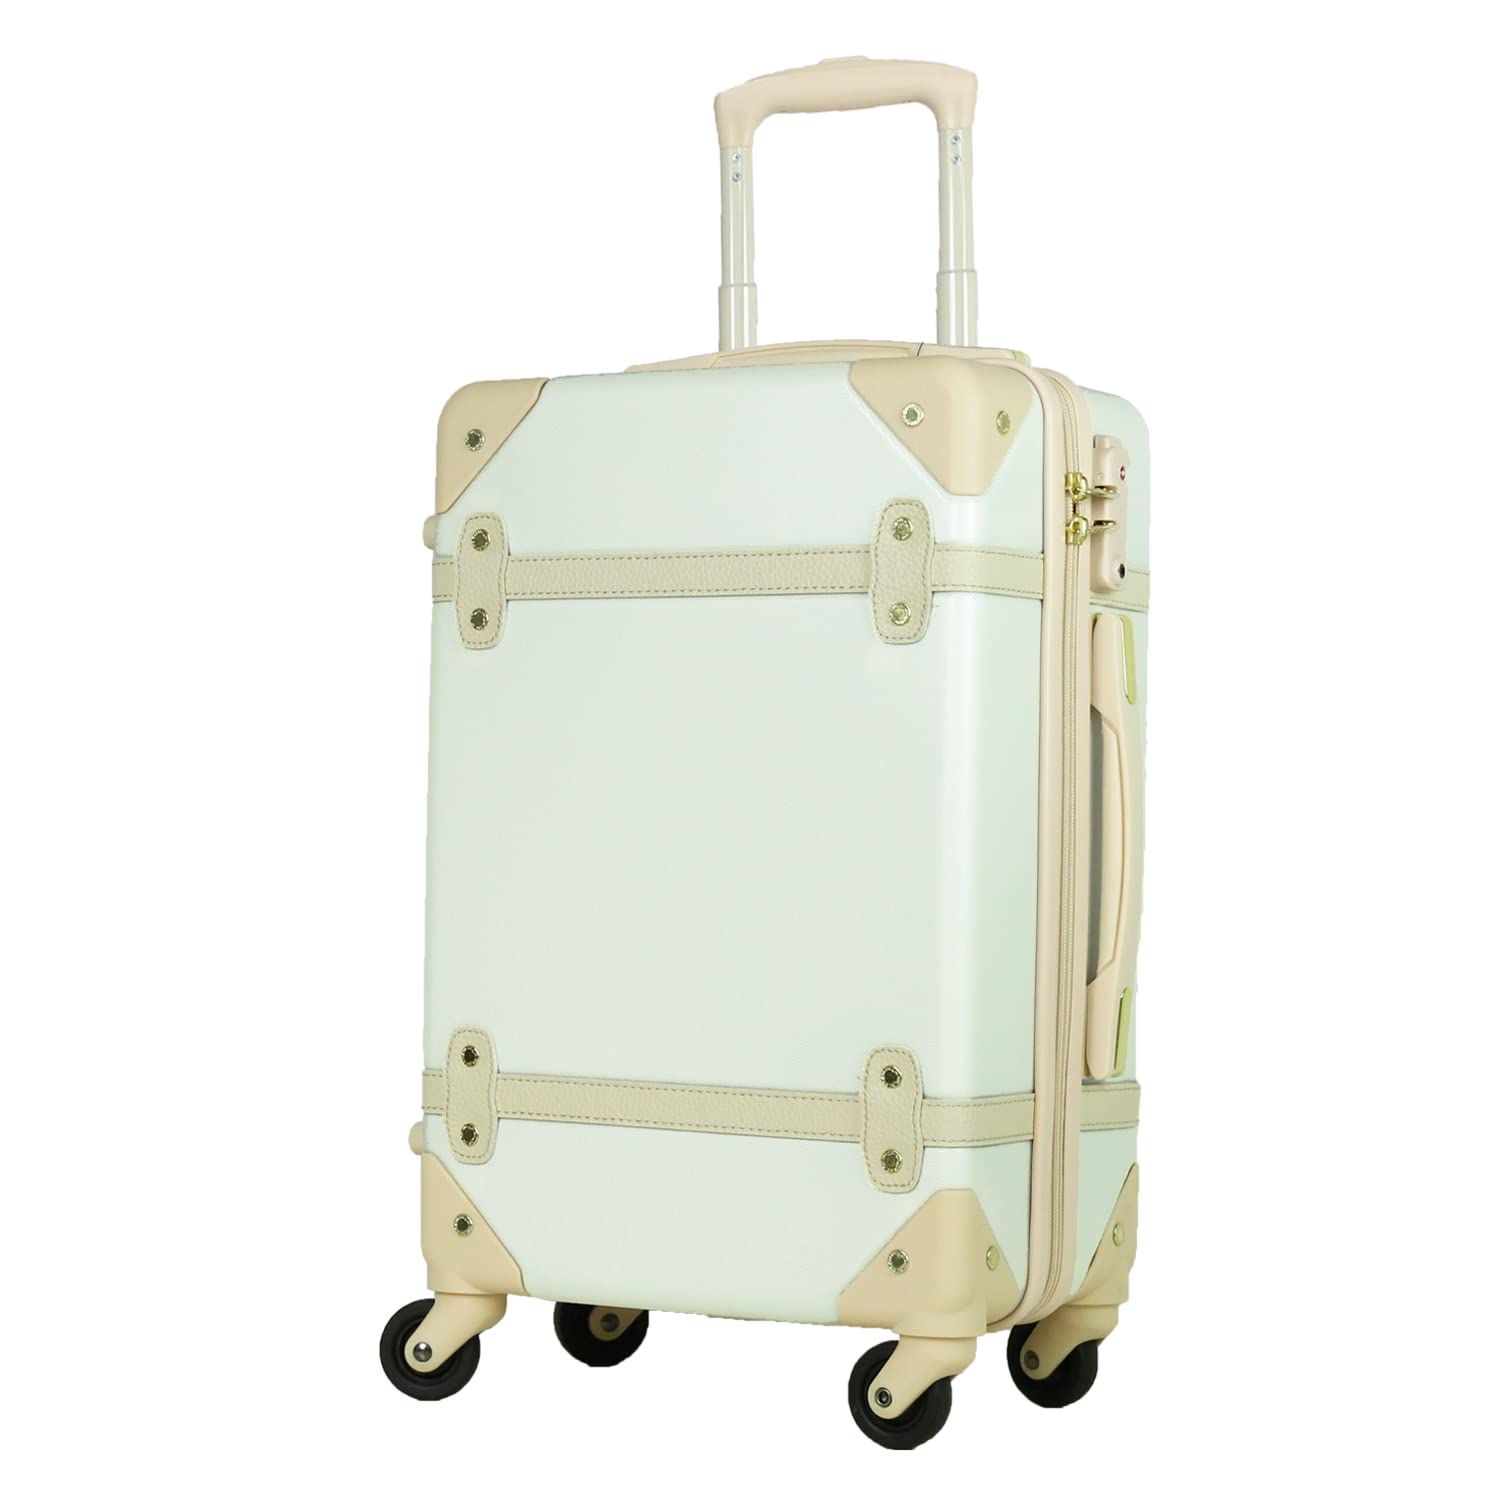 特価商品】日本企業企画 キャリーケース 軽量 スーツケース YKK